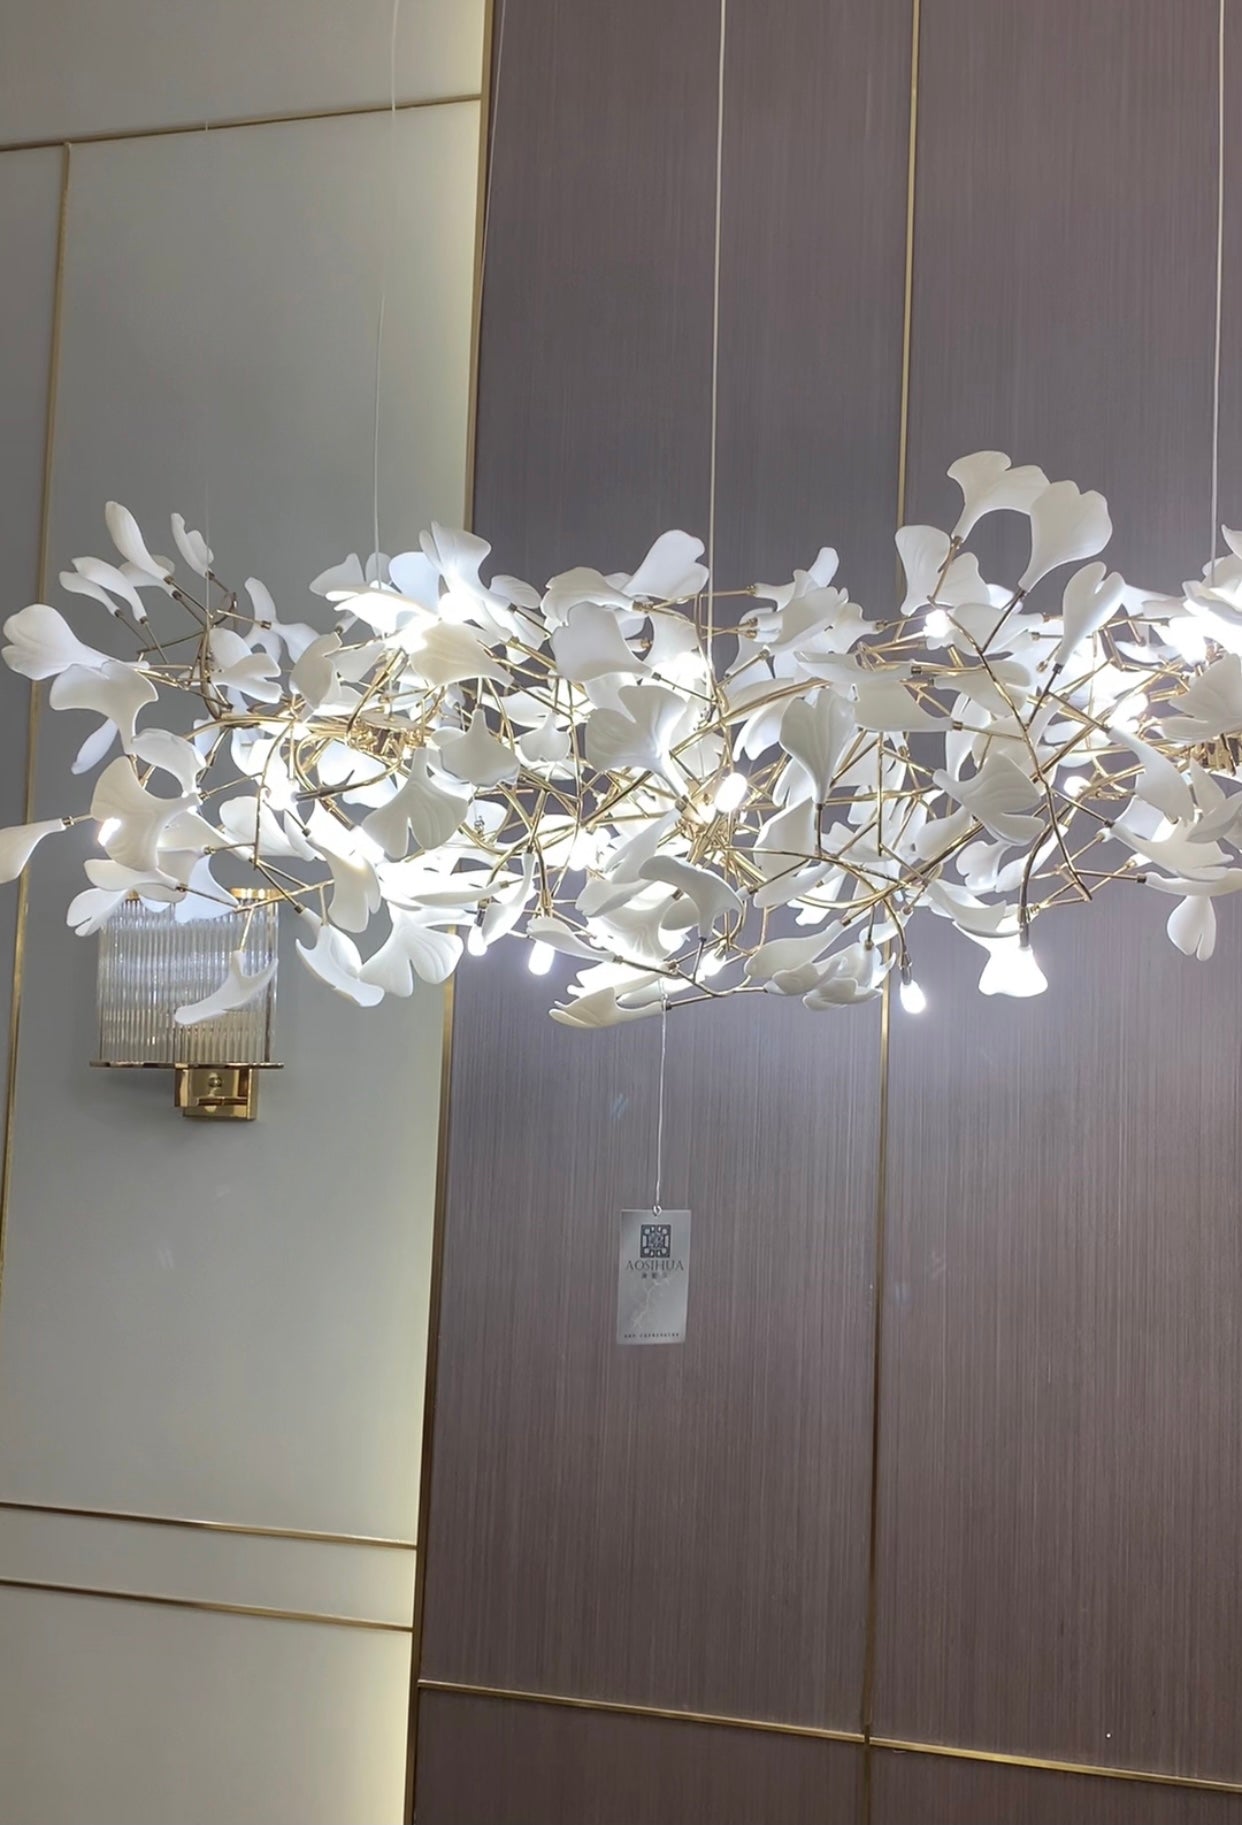 Gingko Leaf Flower Ceramics Chandelier For Foyer / Staircase /Hallway Chandeliers Kevinstudiolives Rectangle L59''*W27.56''*H26.77''/6 Lights (130 Pieces) Warm Light 